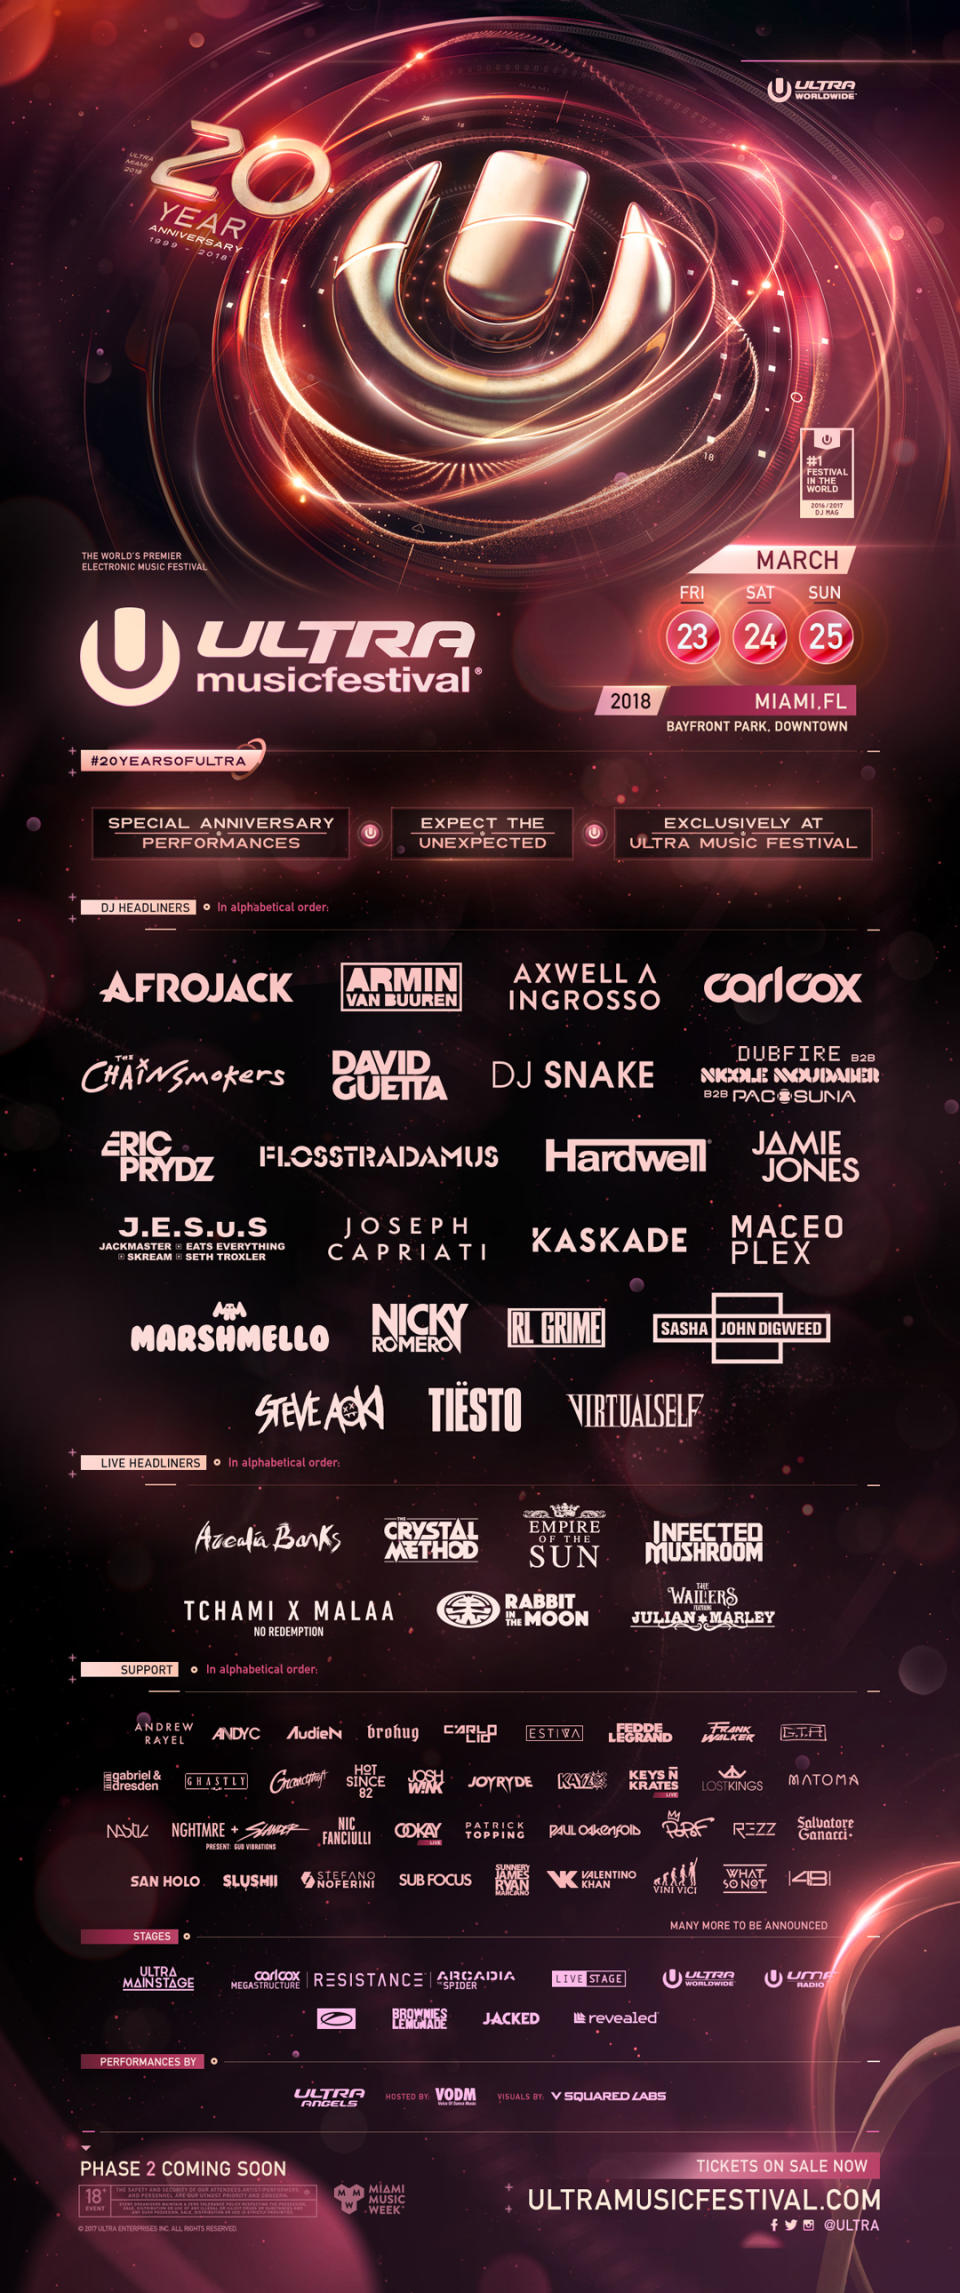 6) Ultra Music Festival Miami